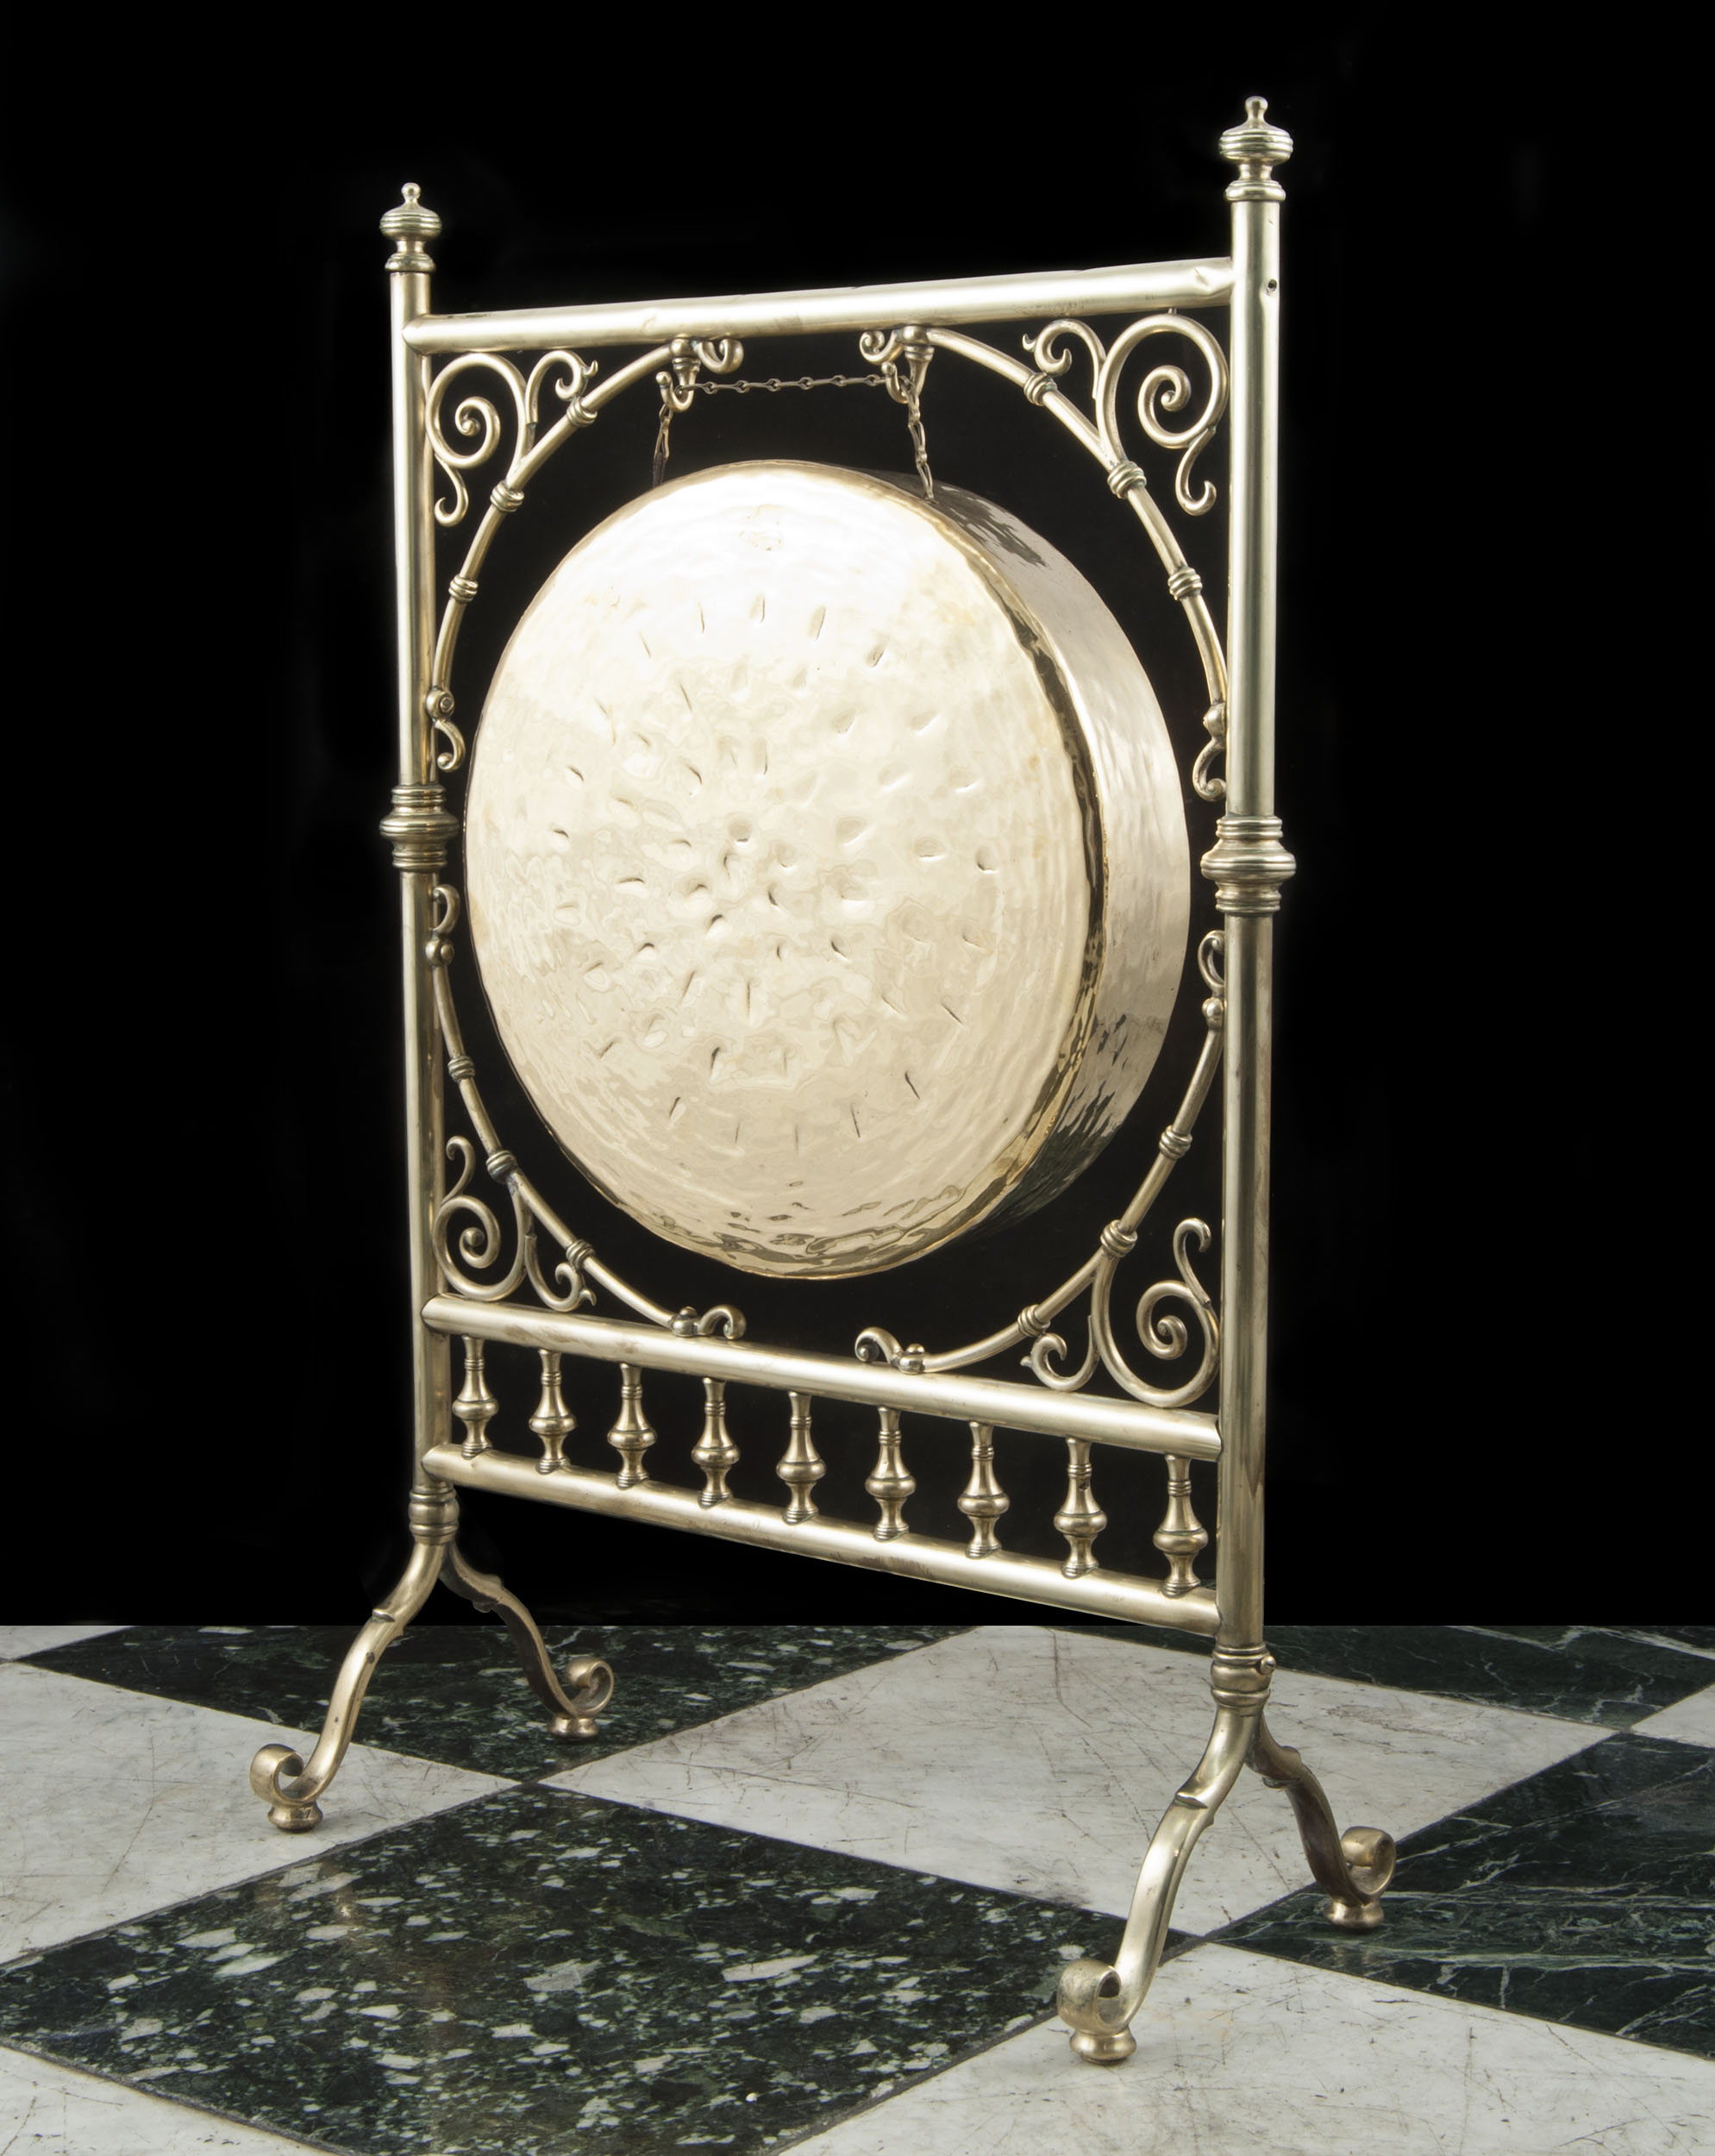 A Victorian brass dinner gong